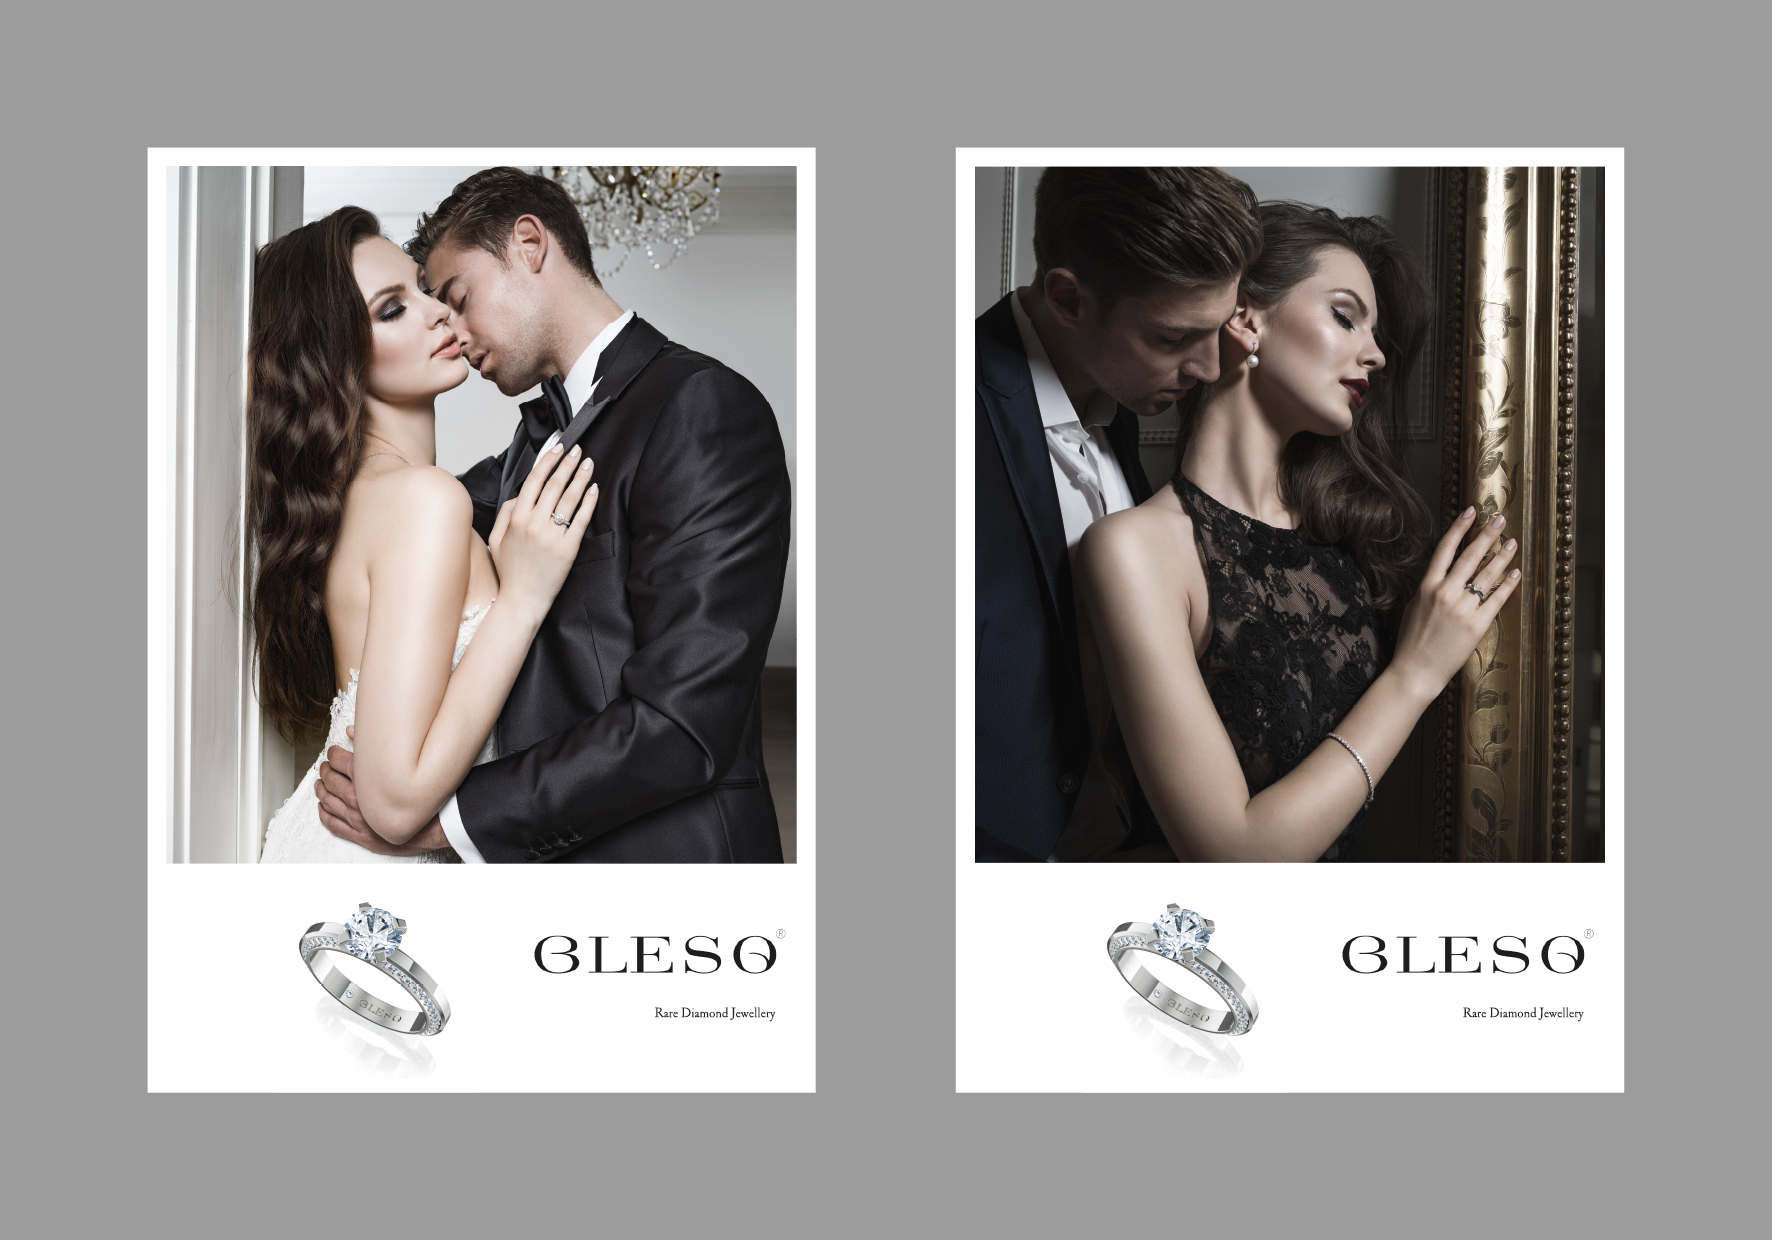 Werbekampagne für Blesq Diamonds